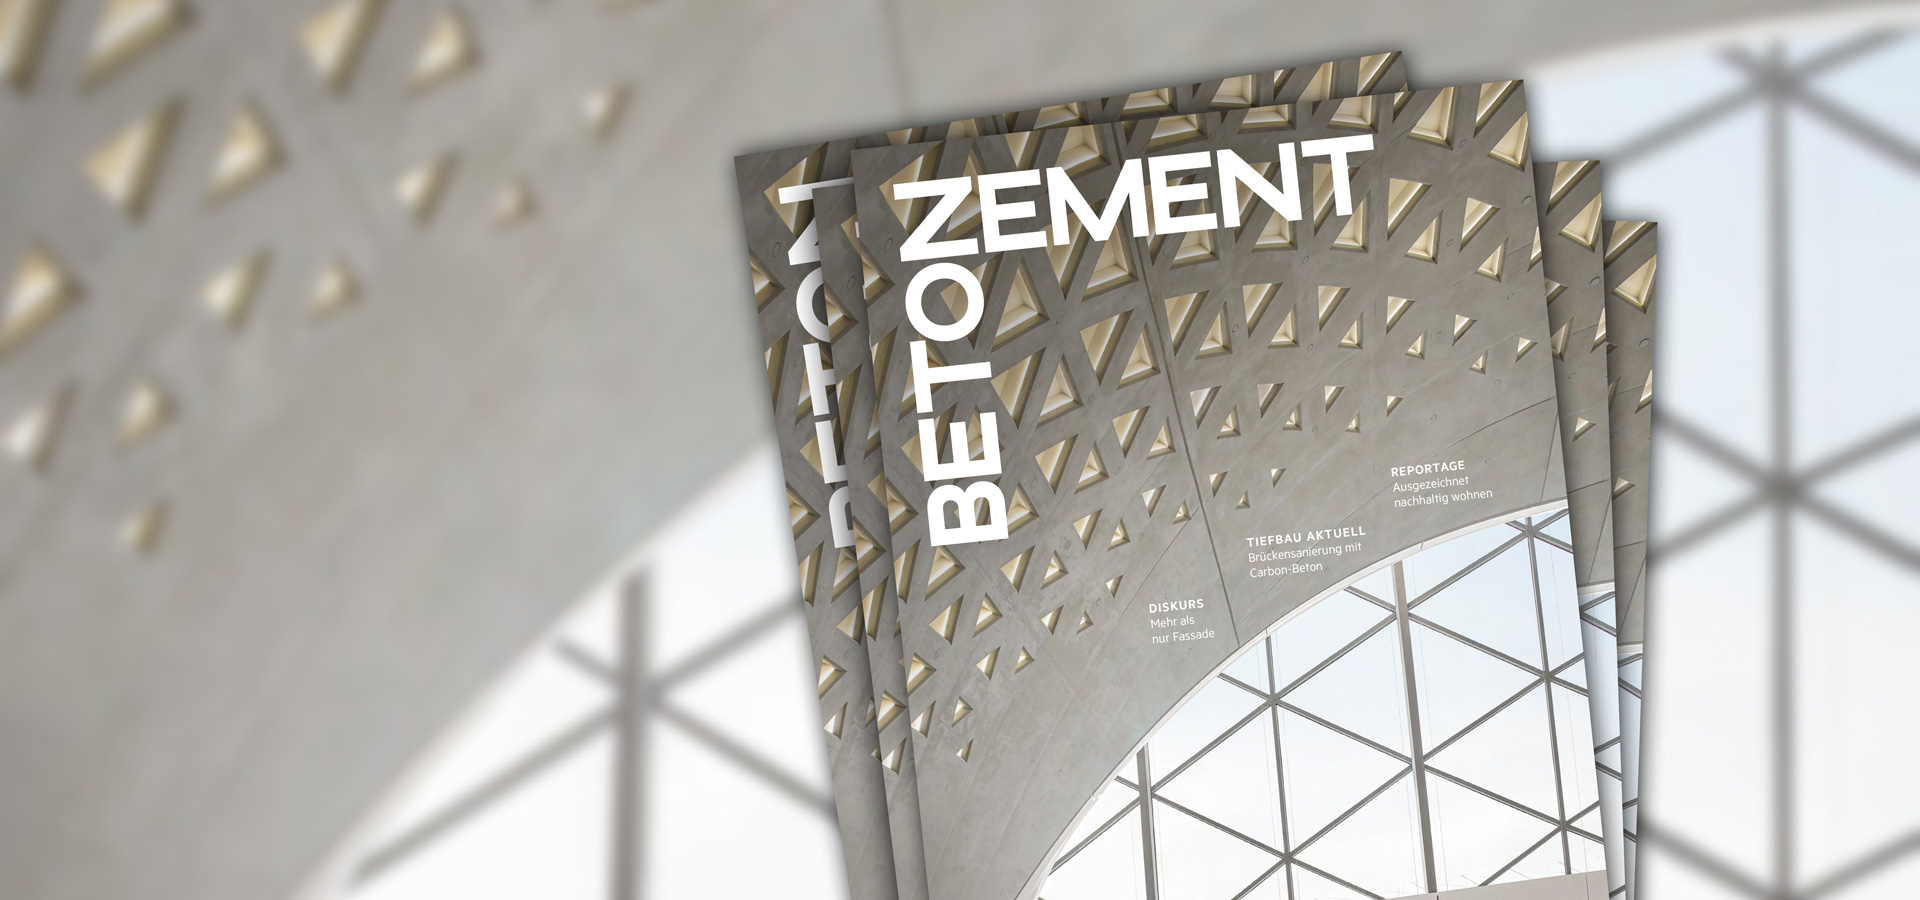 Zement+Beton 5_22: ARCHITEKTUR UND DESIGN